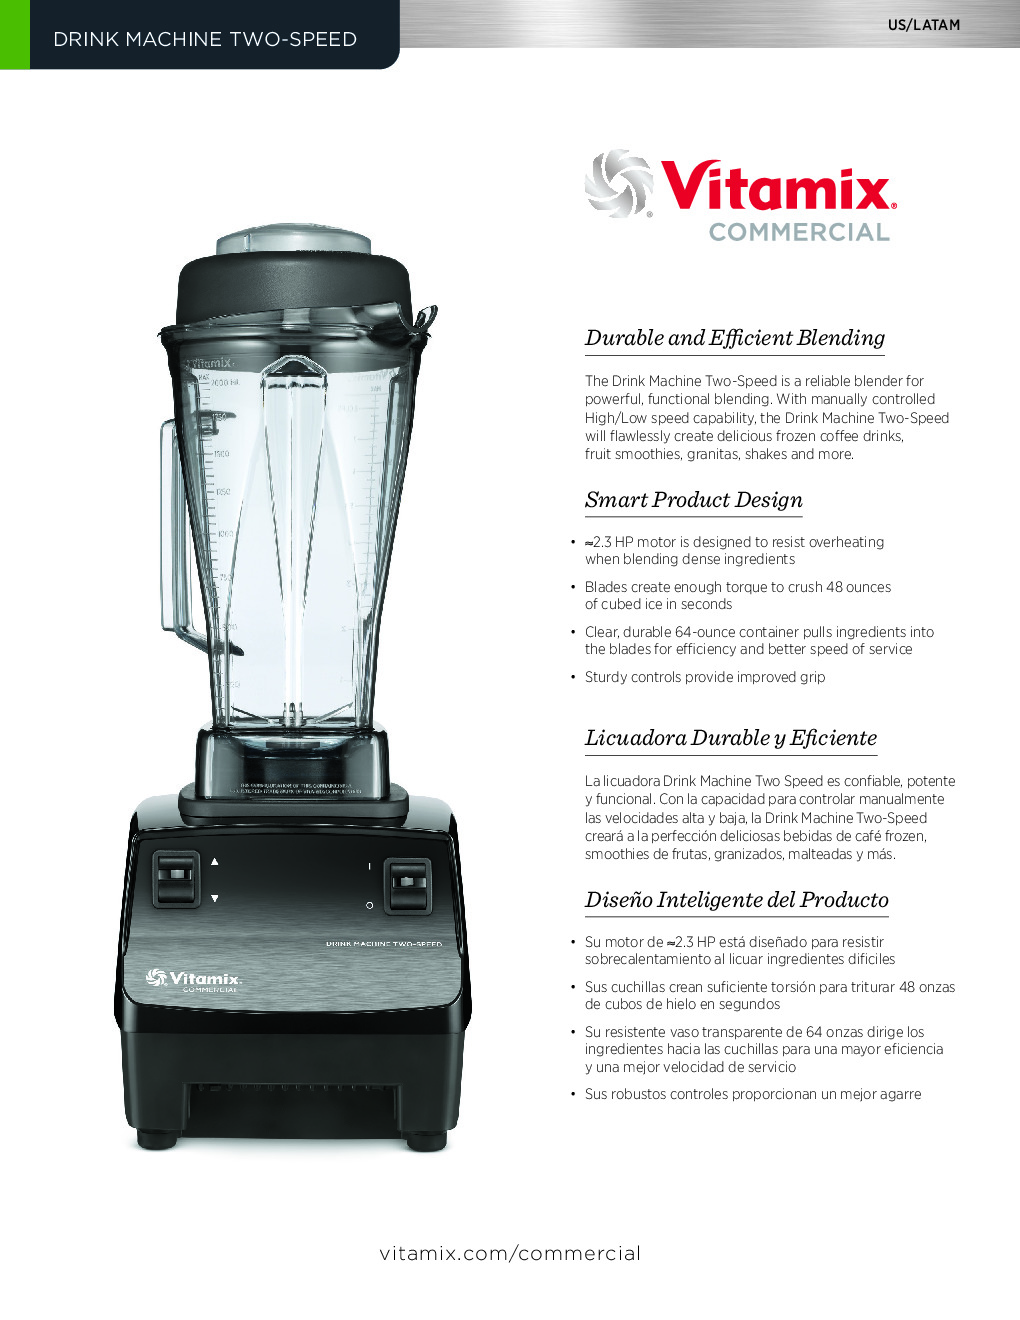 Vitamix 62828 Drink Machine Two Speed Blender